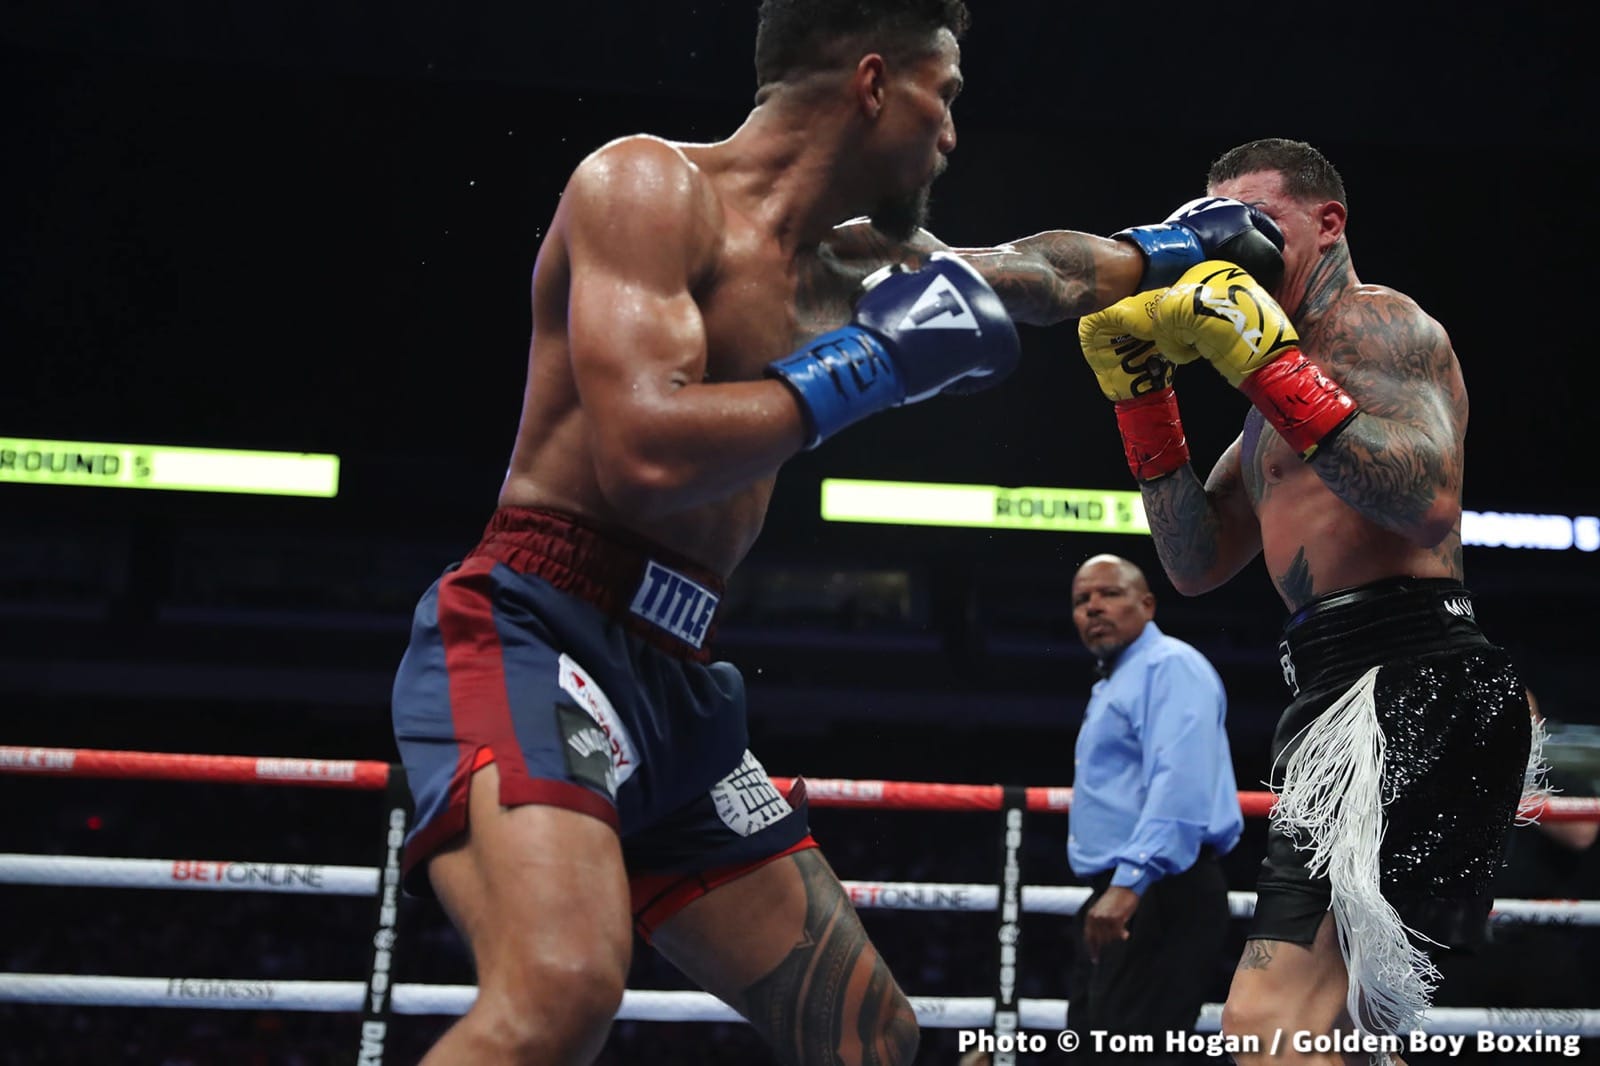 Image: Boxing Results: Ryan “King Ry” Garcia Defeats Emmanuel “Game Boy” Tagoe!